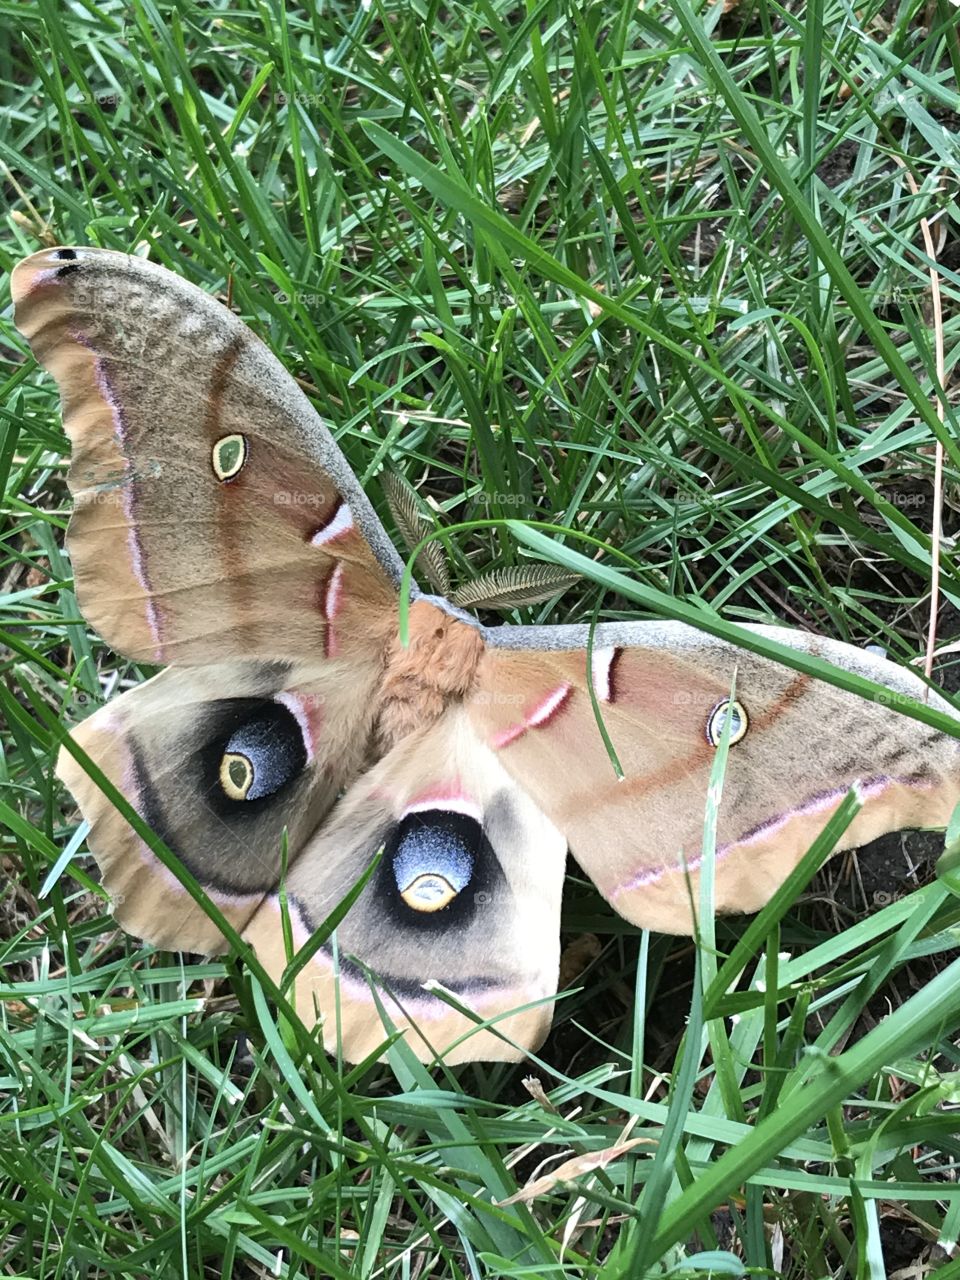 Odd butterfly